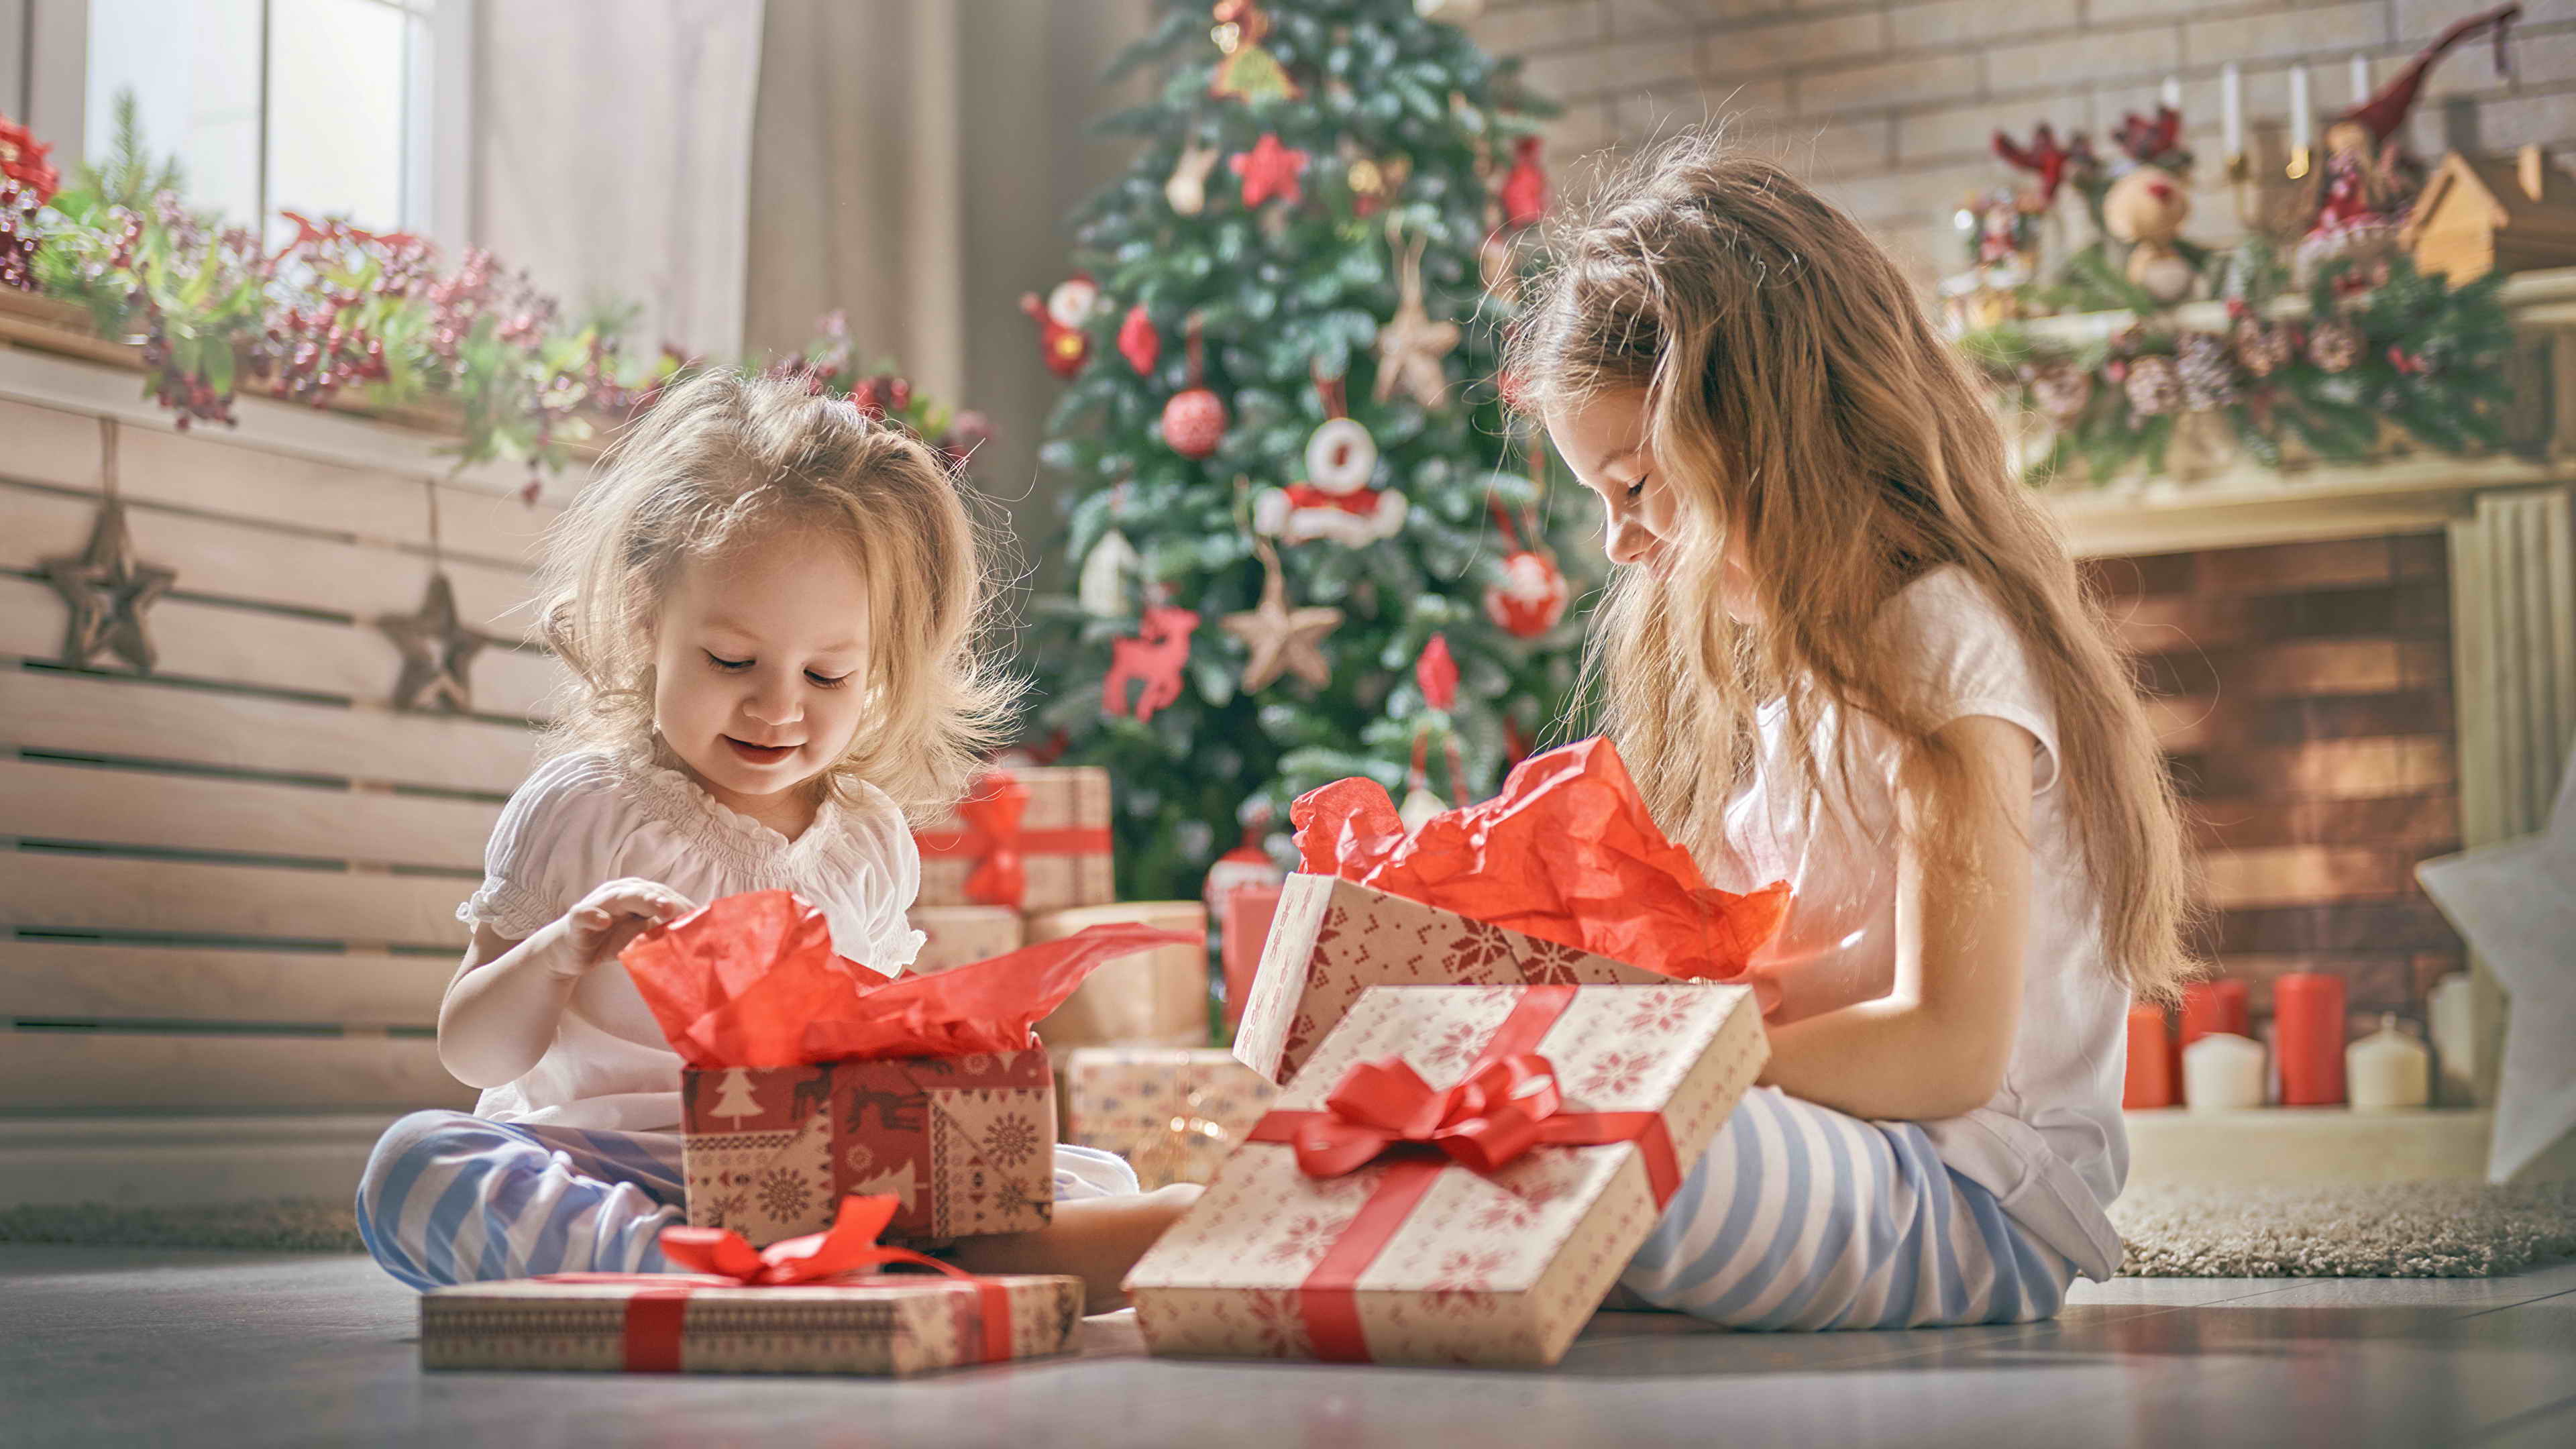 Рождество дарит подарки. Детям о Рождестве. Подарки под ёлкой. Подарки для детей. Новогодние подарки для девочек.